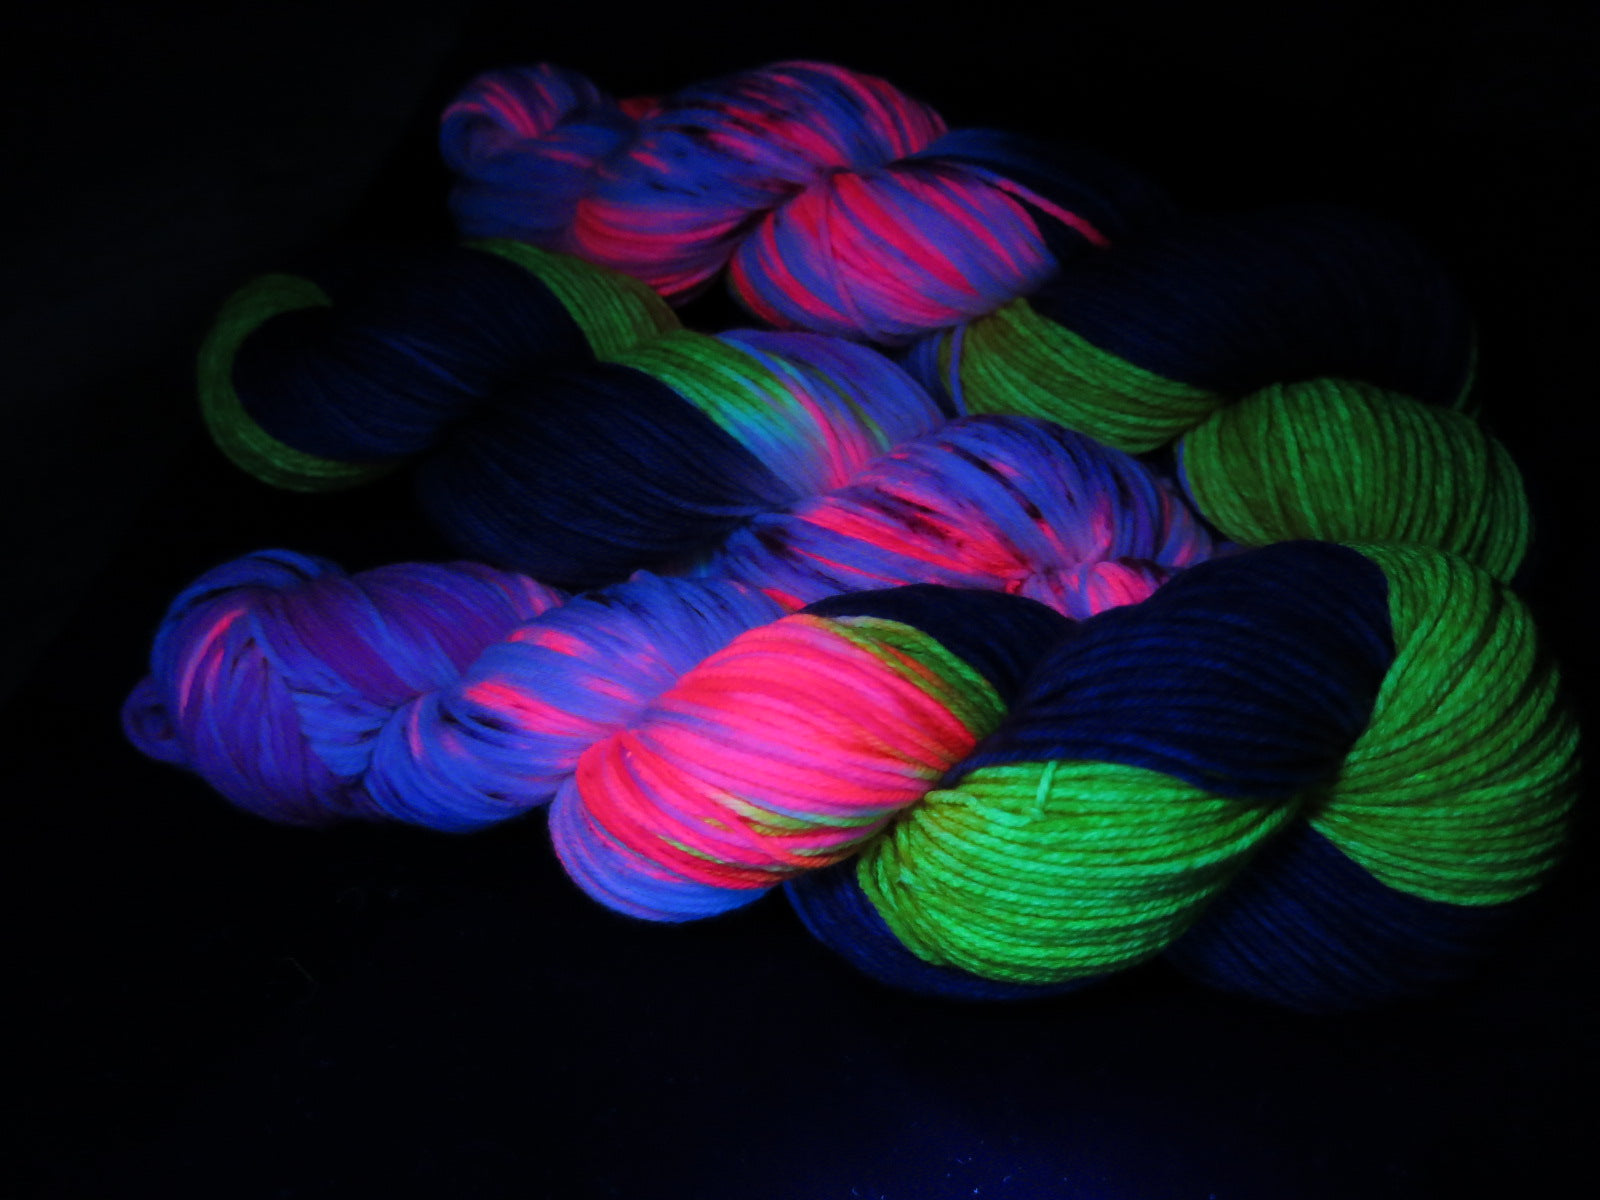 uv reactive yarn fluorescing under black light